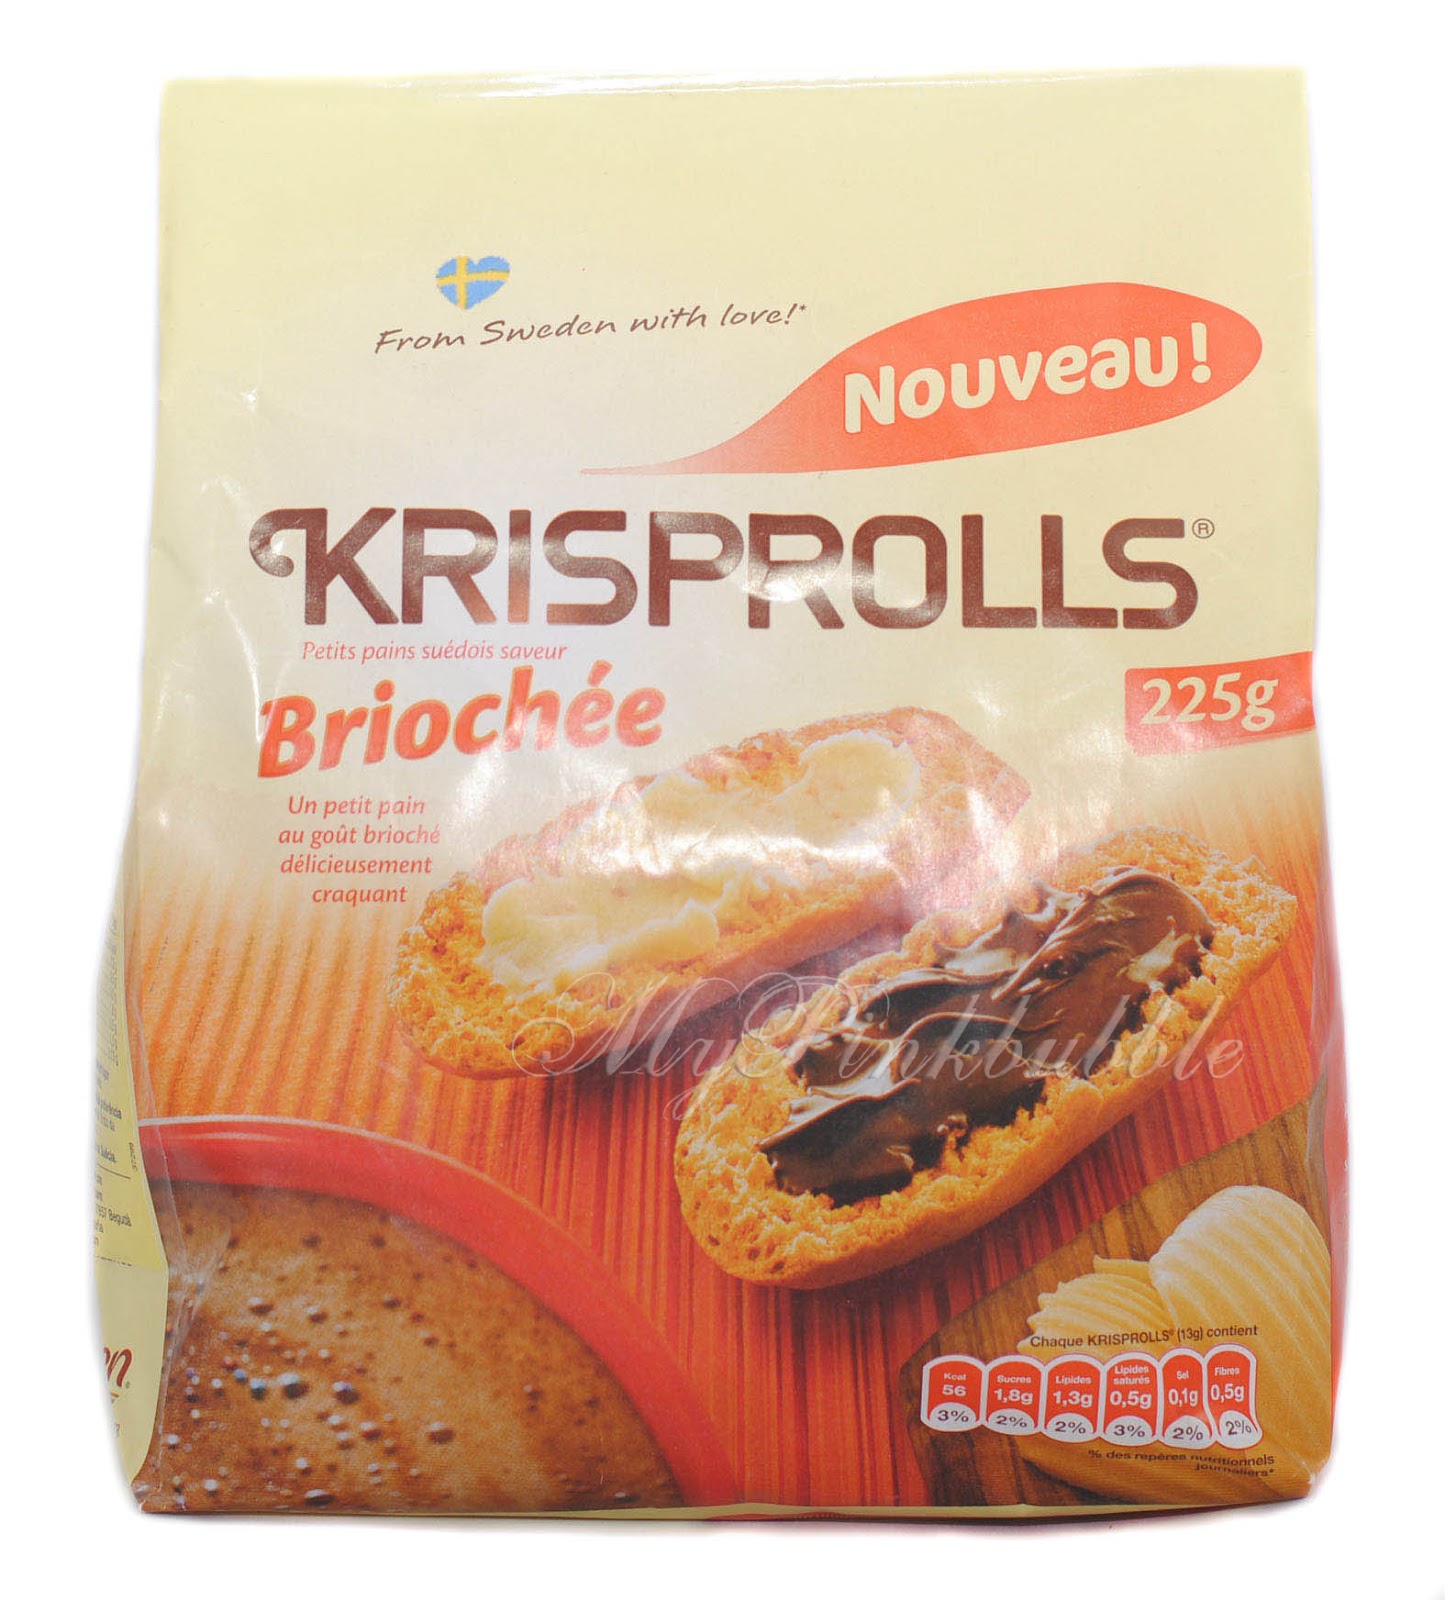 Krisprolls brioche